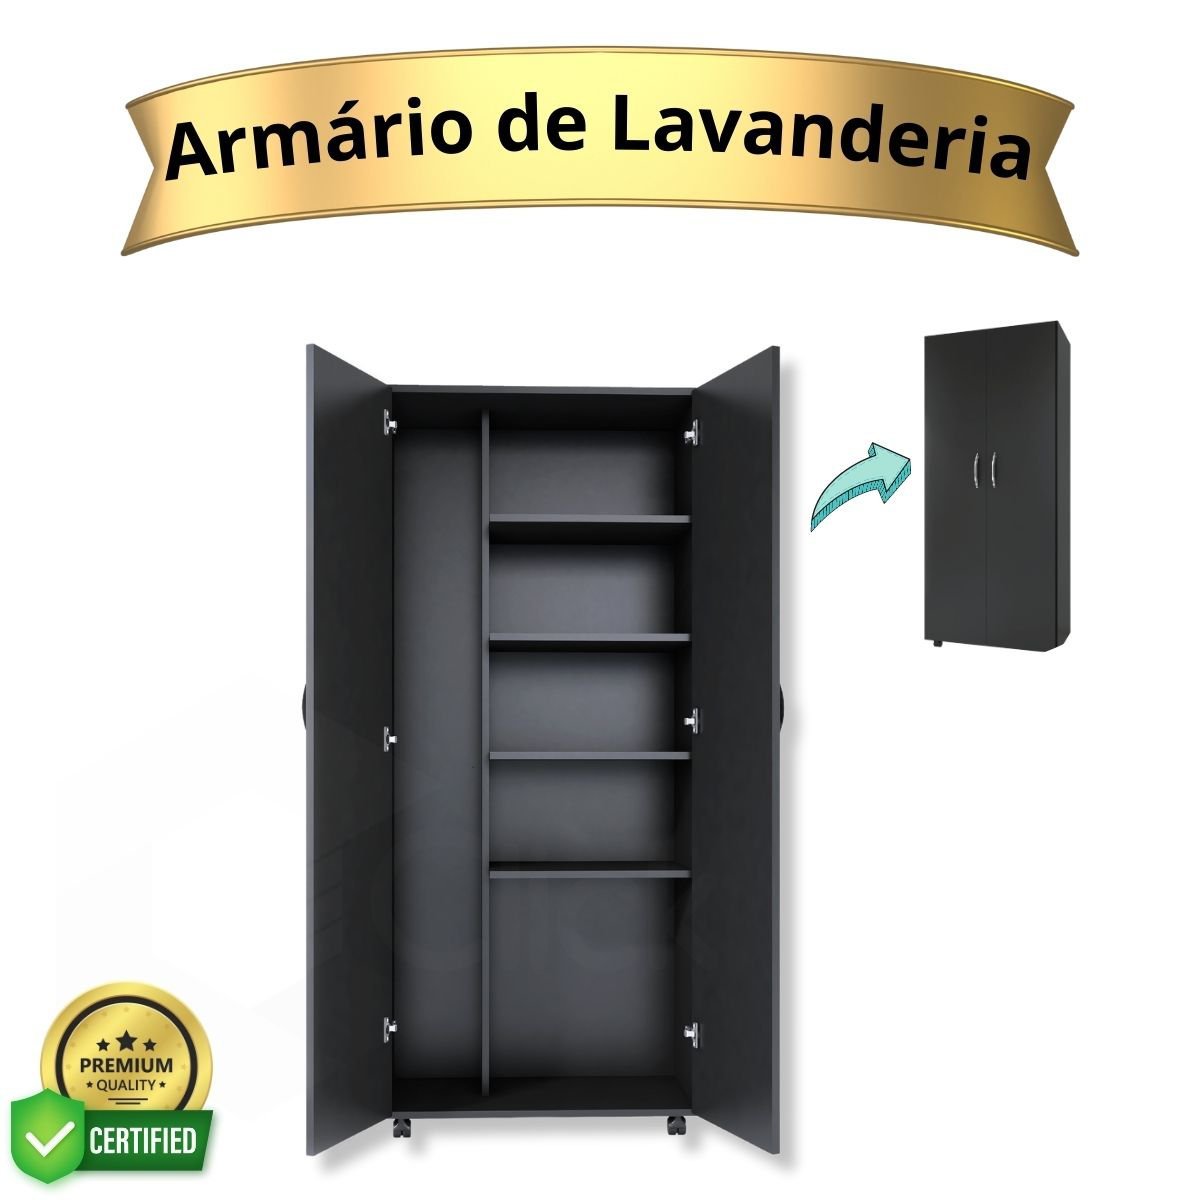 Armário Para Lavanderia Multiuso 2 Portas Alto Dispensa ClickForte Armário Lavanderia Preto - 16